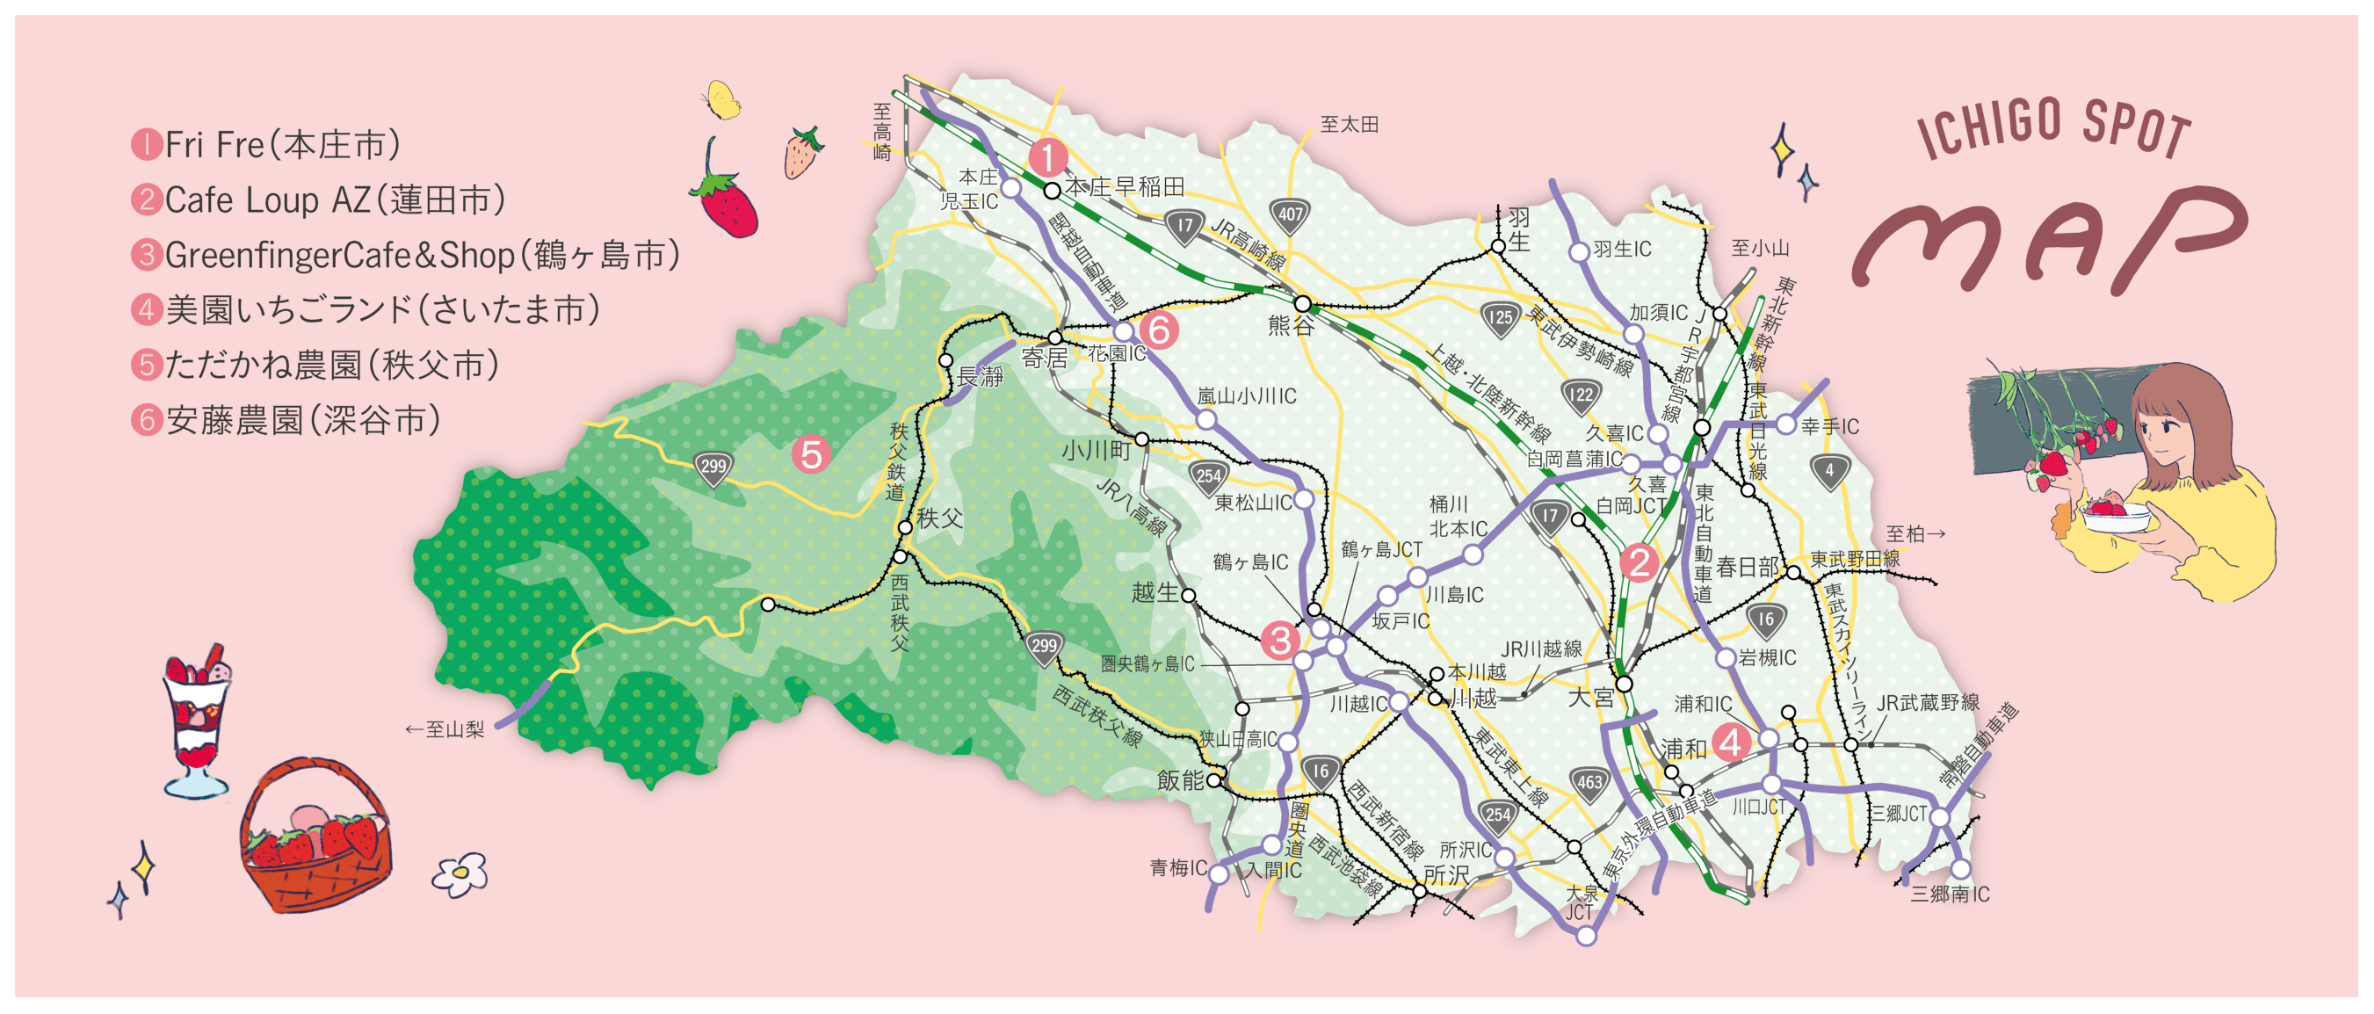 ICHIGO SPOT MAP